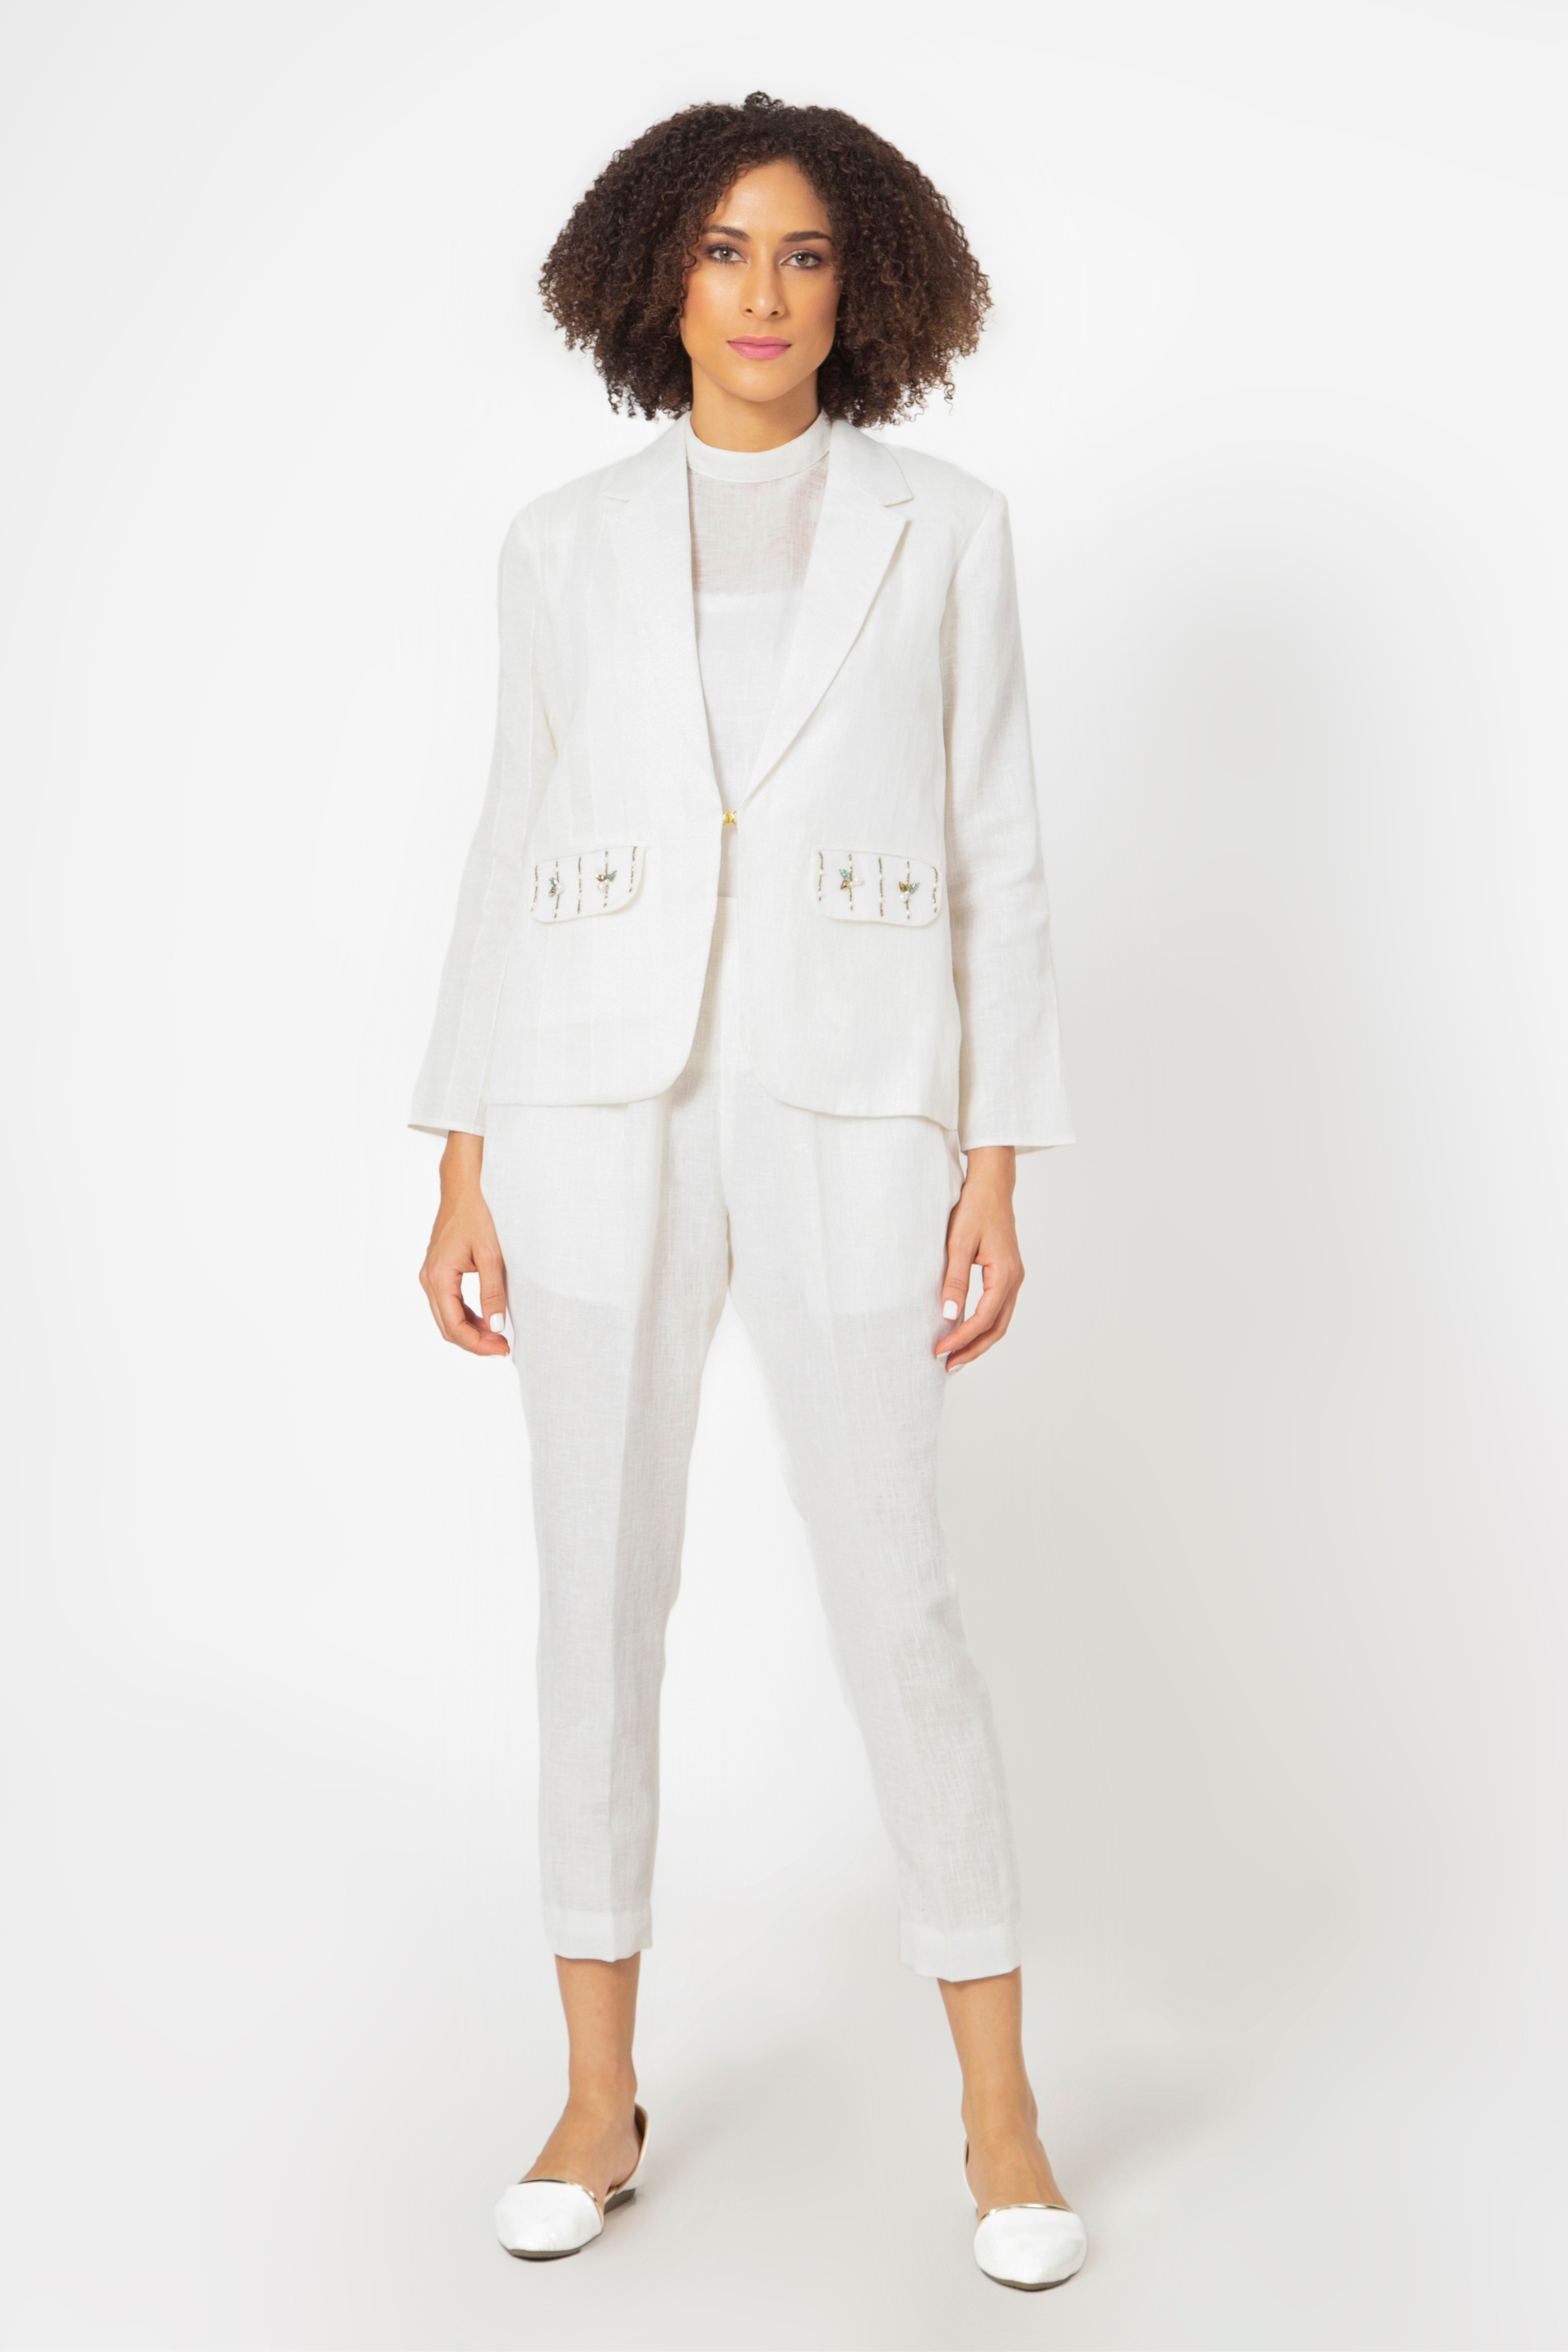 Embellished White Jacket and Pant Set